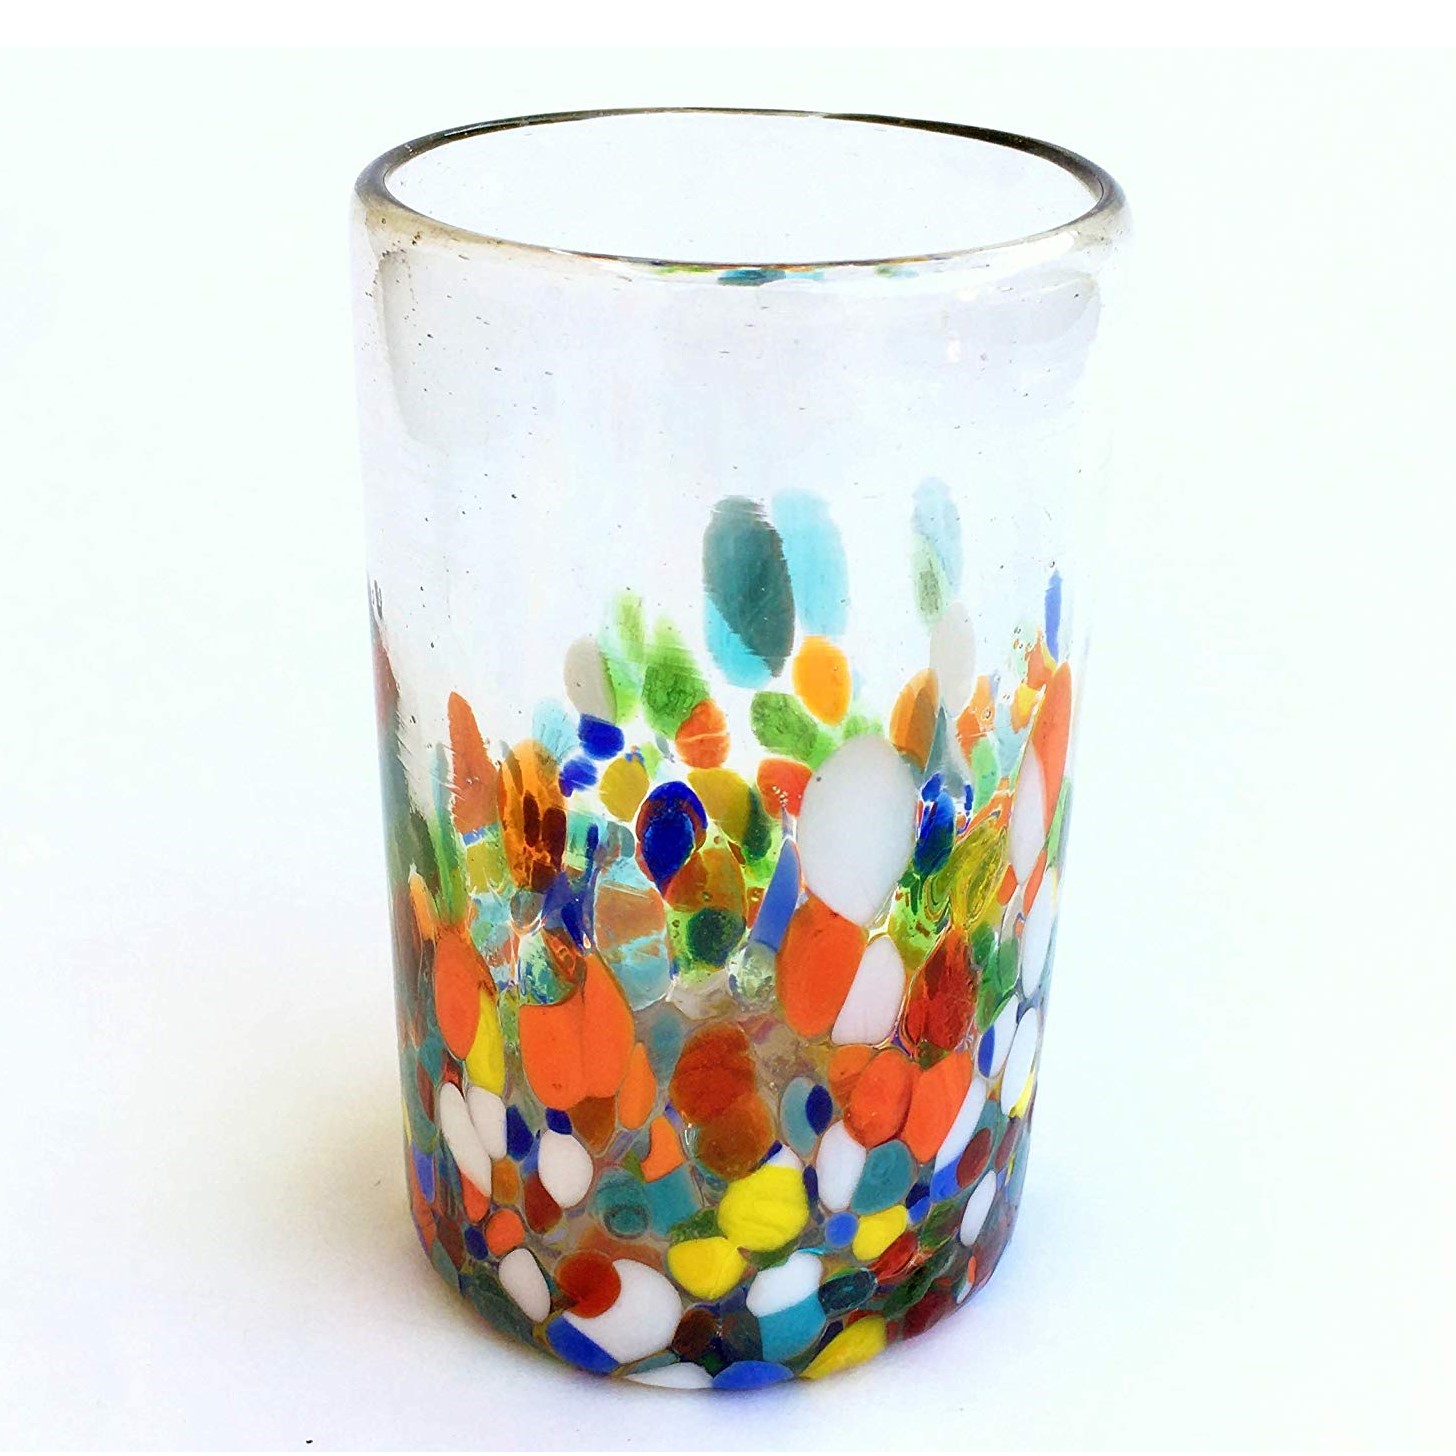 Estilo Confeti al Mayoreo / vasos grandes 'Cristal & Confeti' / Deje entrar a la primavera en su casa con éste colorido juego de vasos. El decorado con vidrio multicolor los hace resaltar en cualquier lugar.